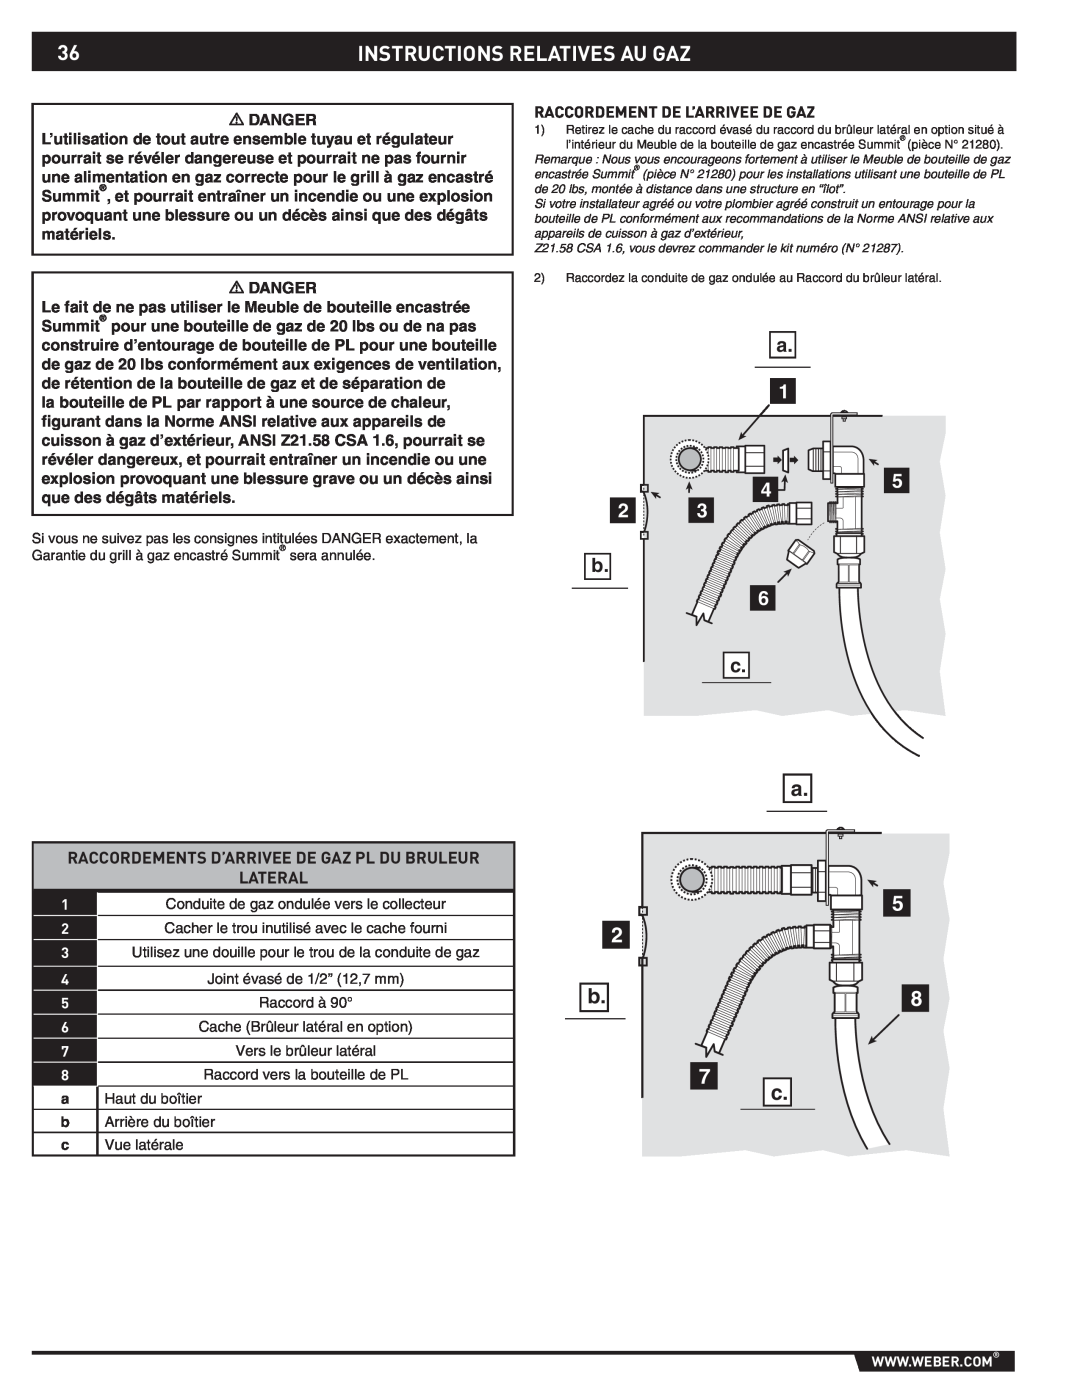 Weber 89796 manual Instructions Relatives Au Gaz, Raccordements D’Arrivee De Gaz Pl Du Bruleur, Lateral 